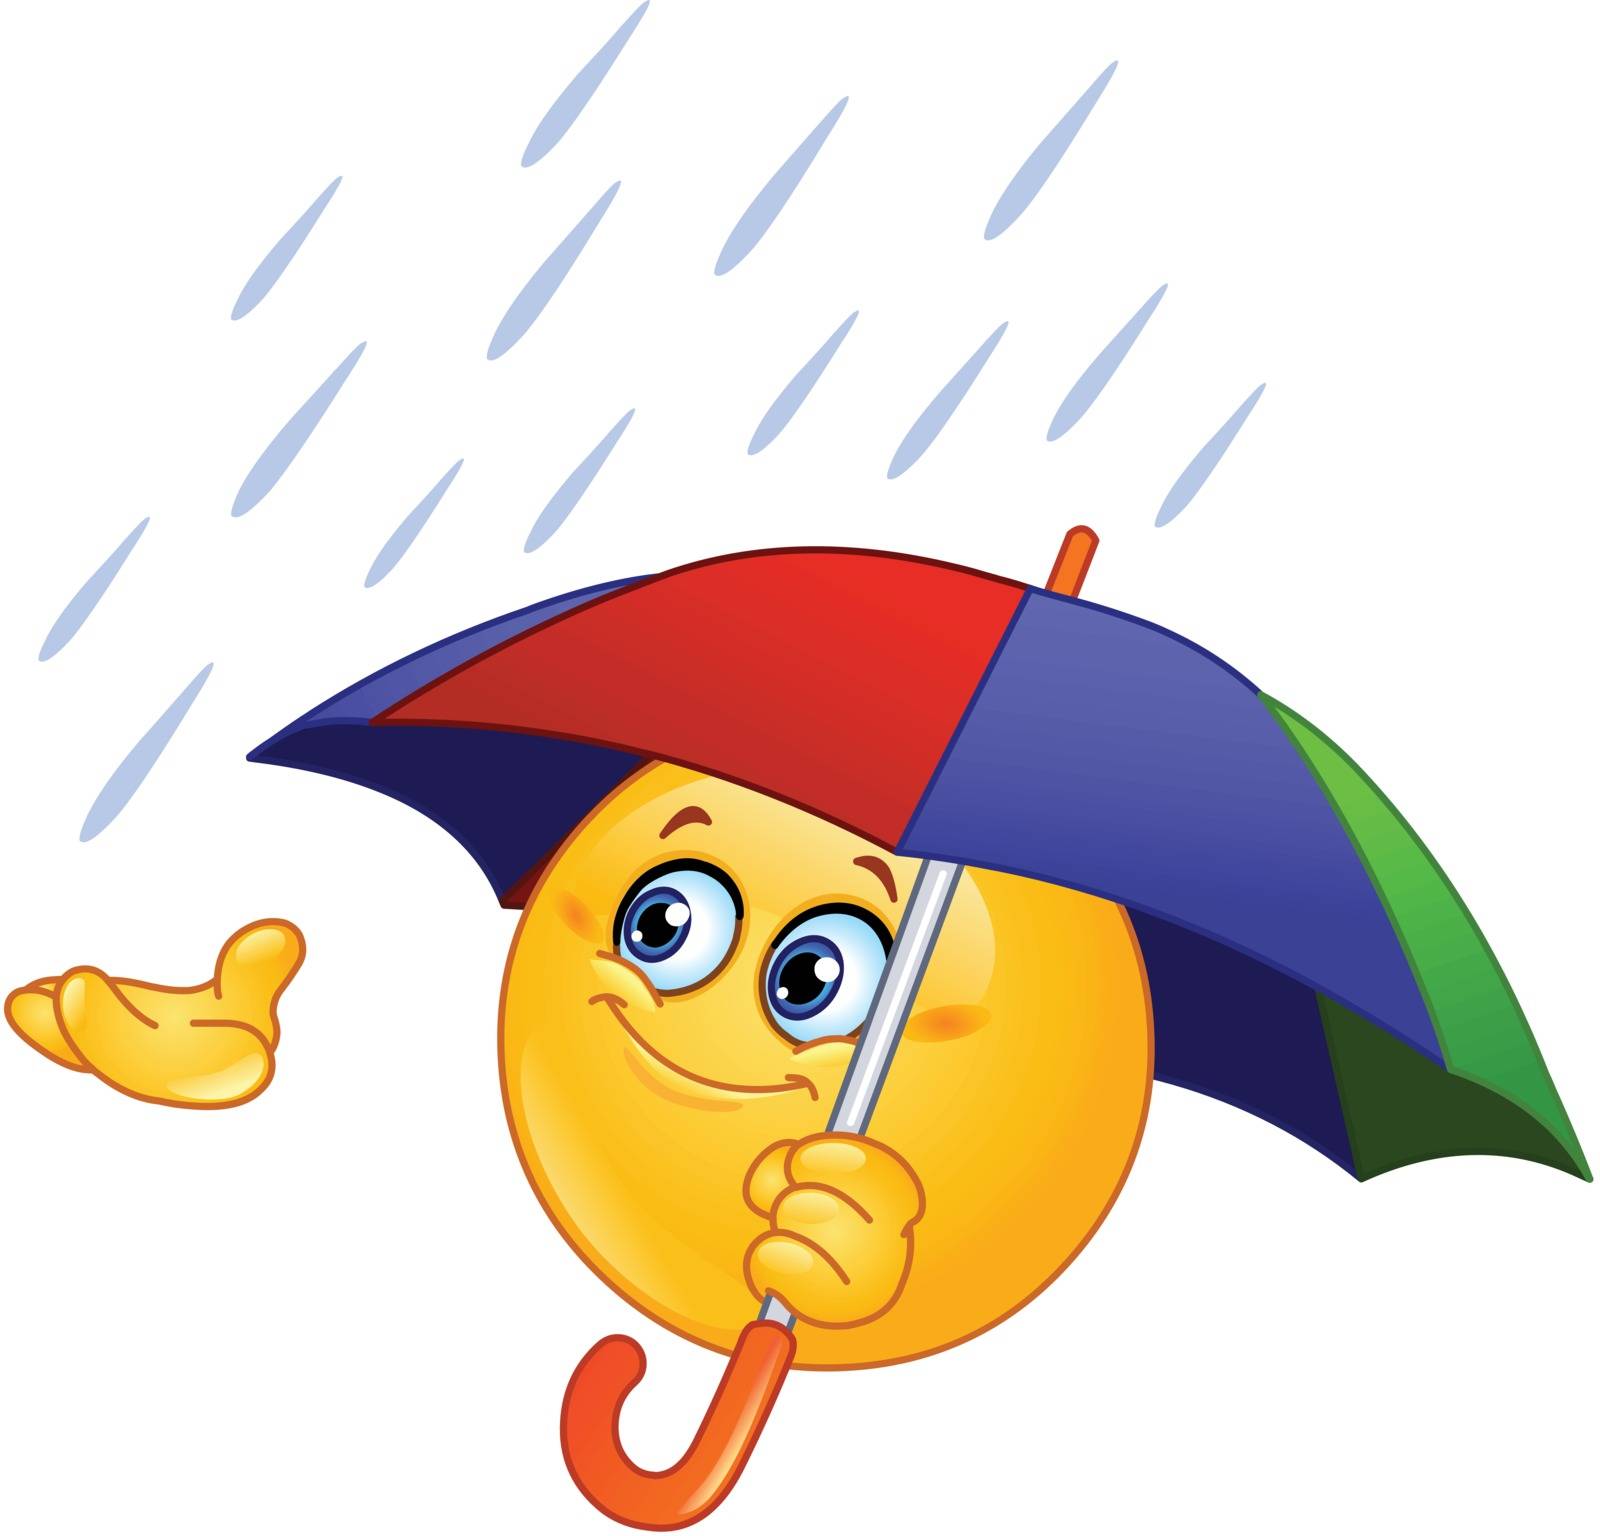 Emoticon holding an umbrella